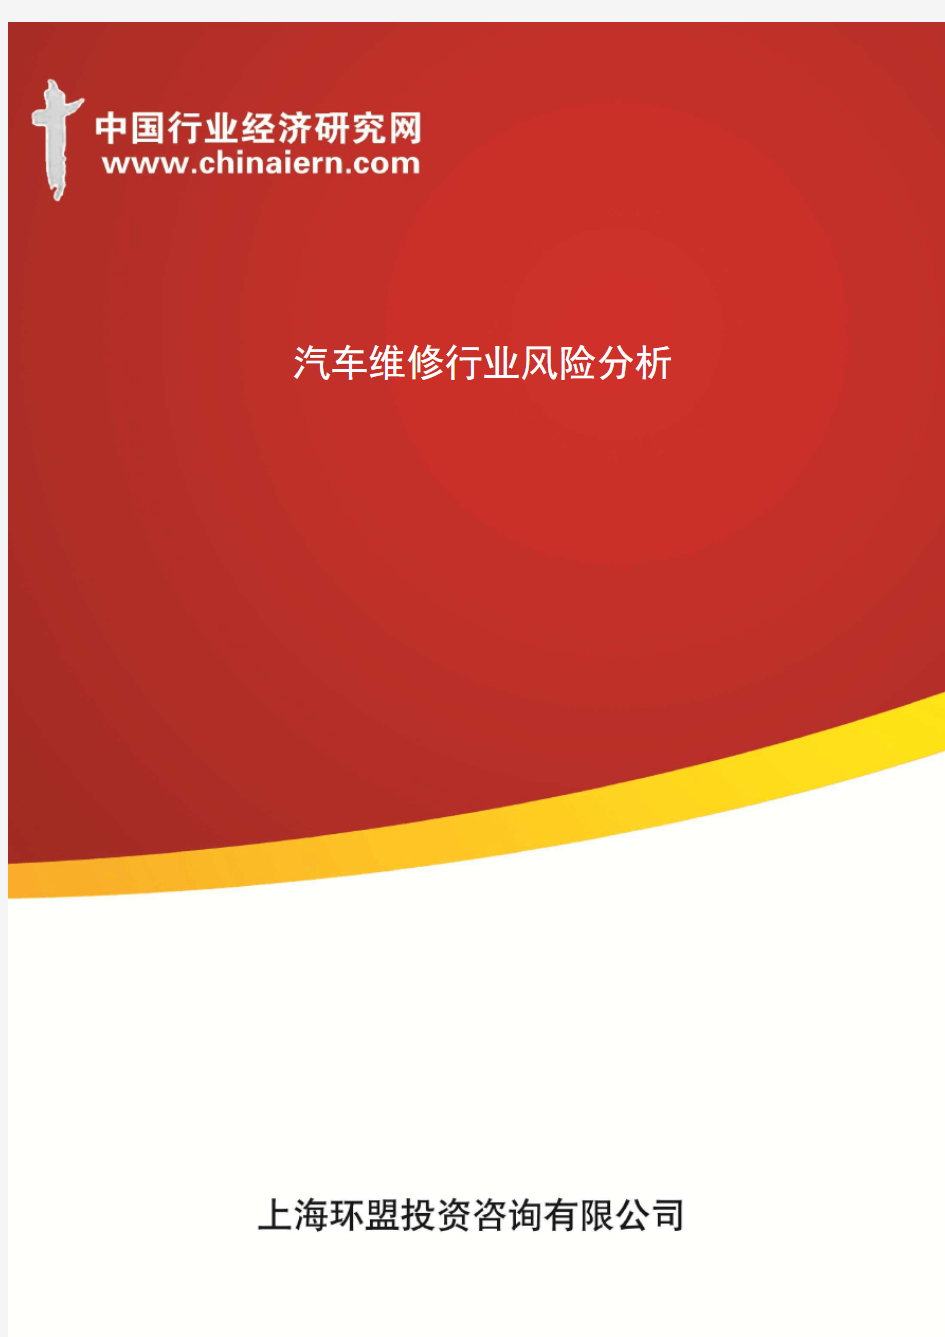 汽车维修行业风险分析(上海环盟)